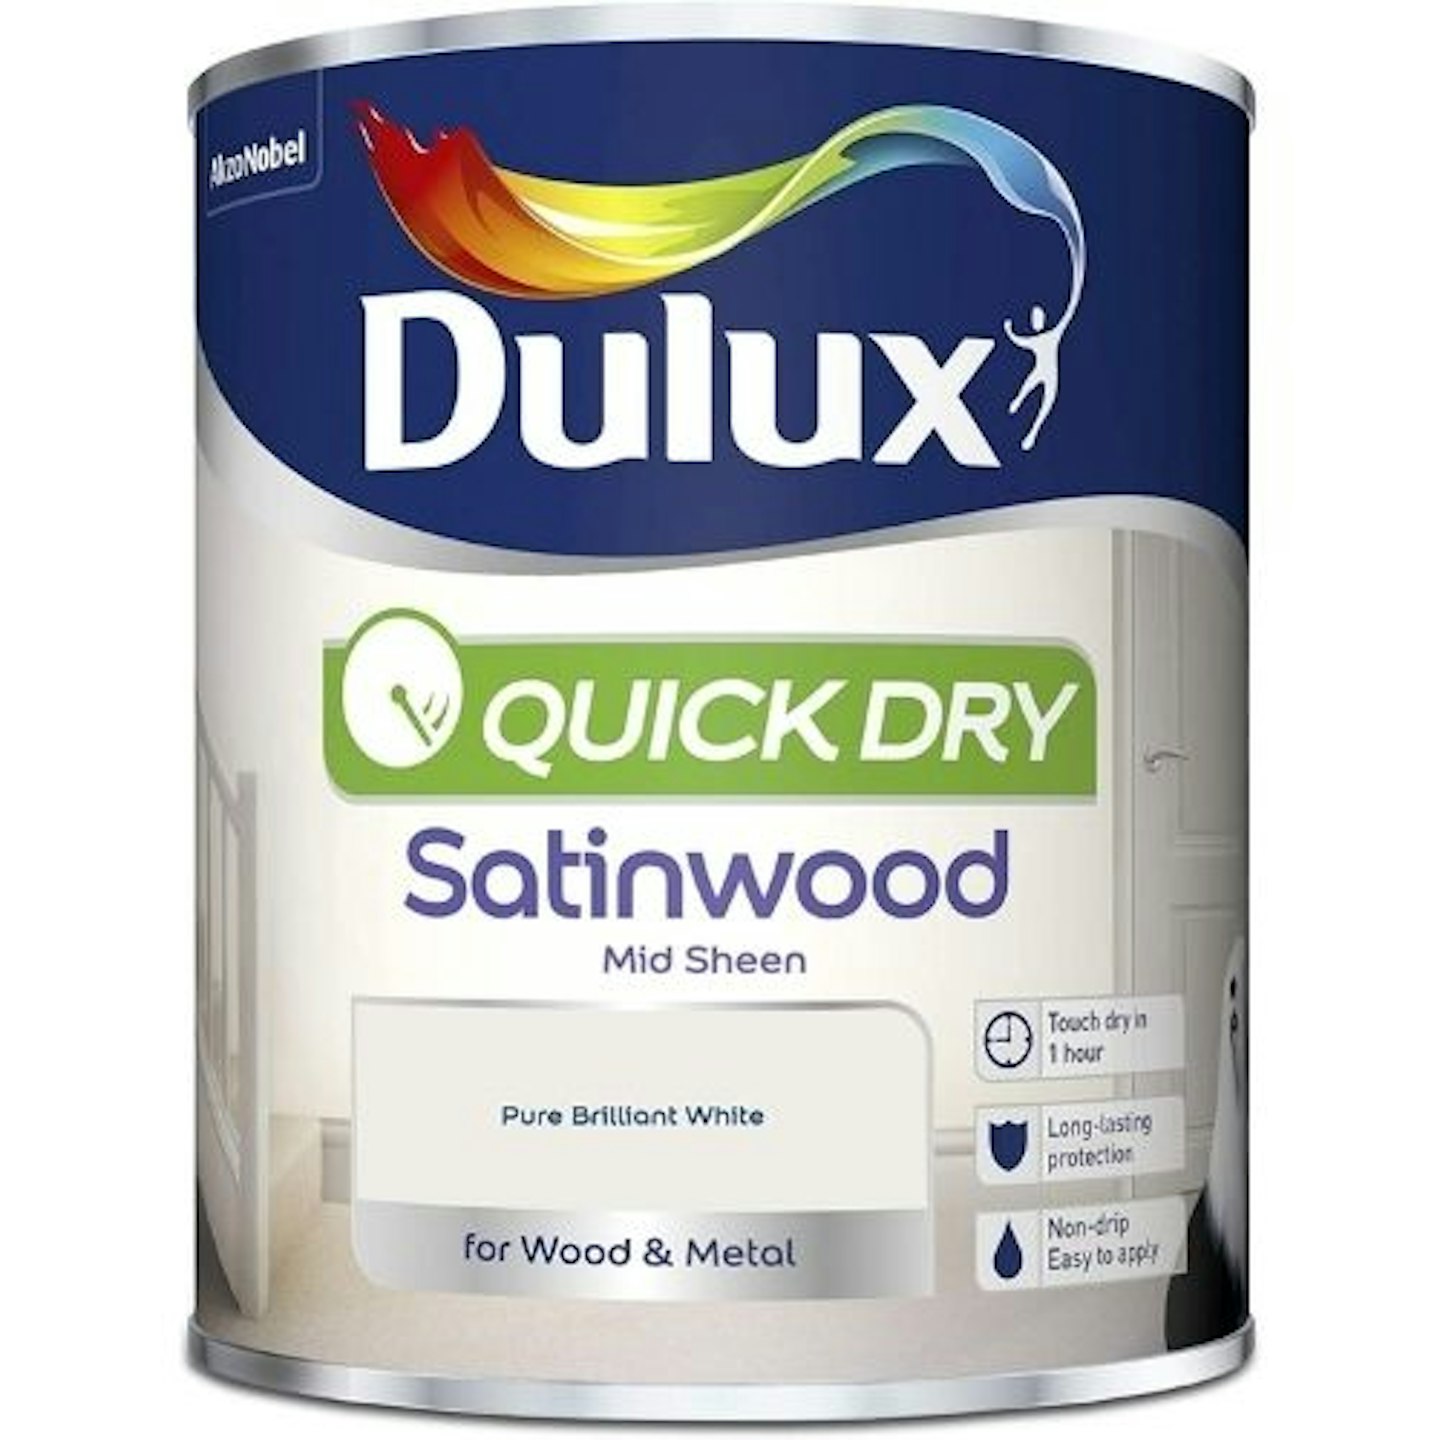 Dulux Quick Dry Satinwood Paint